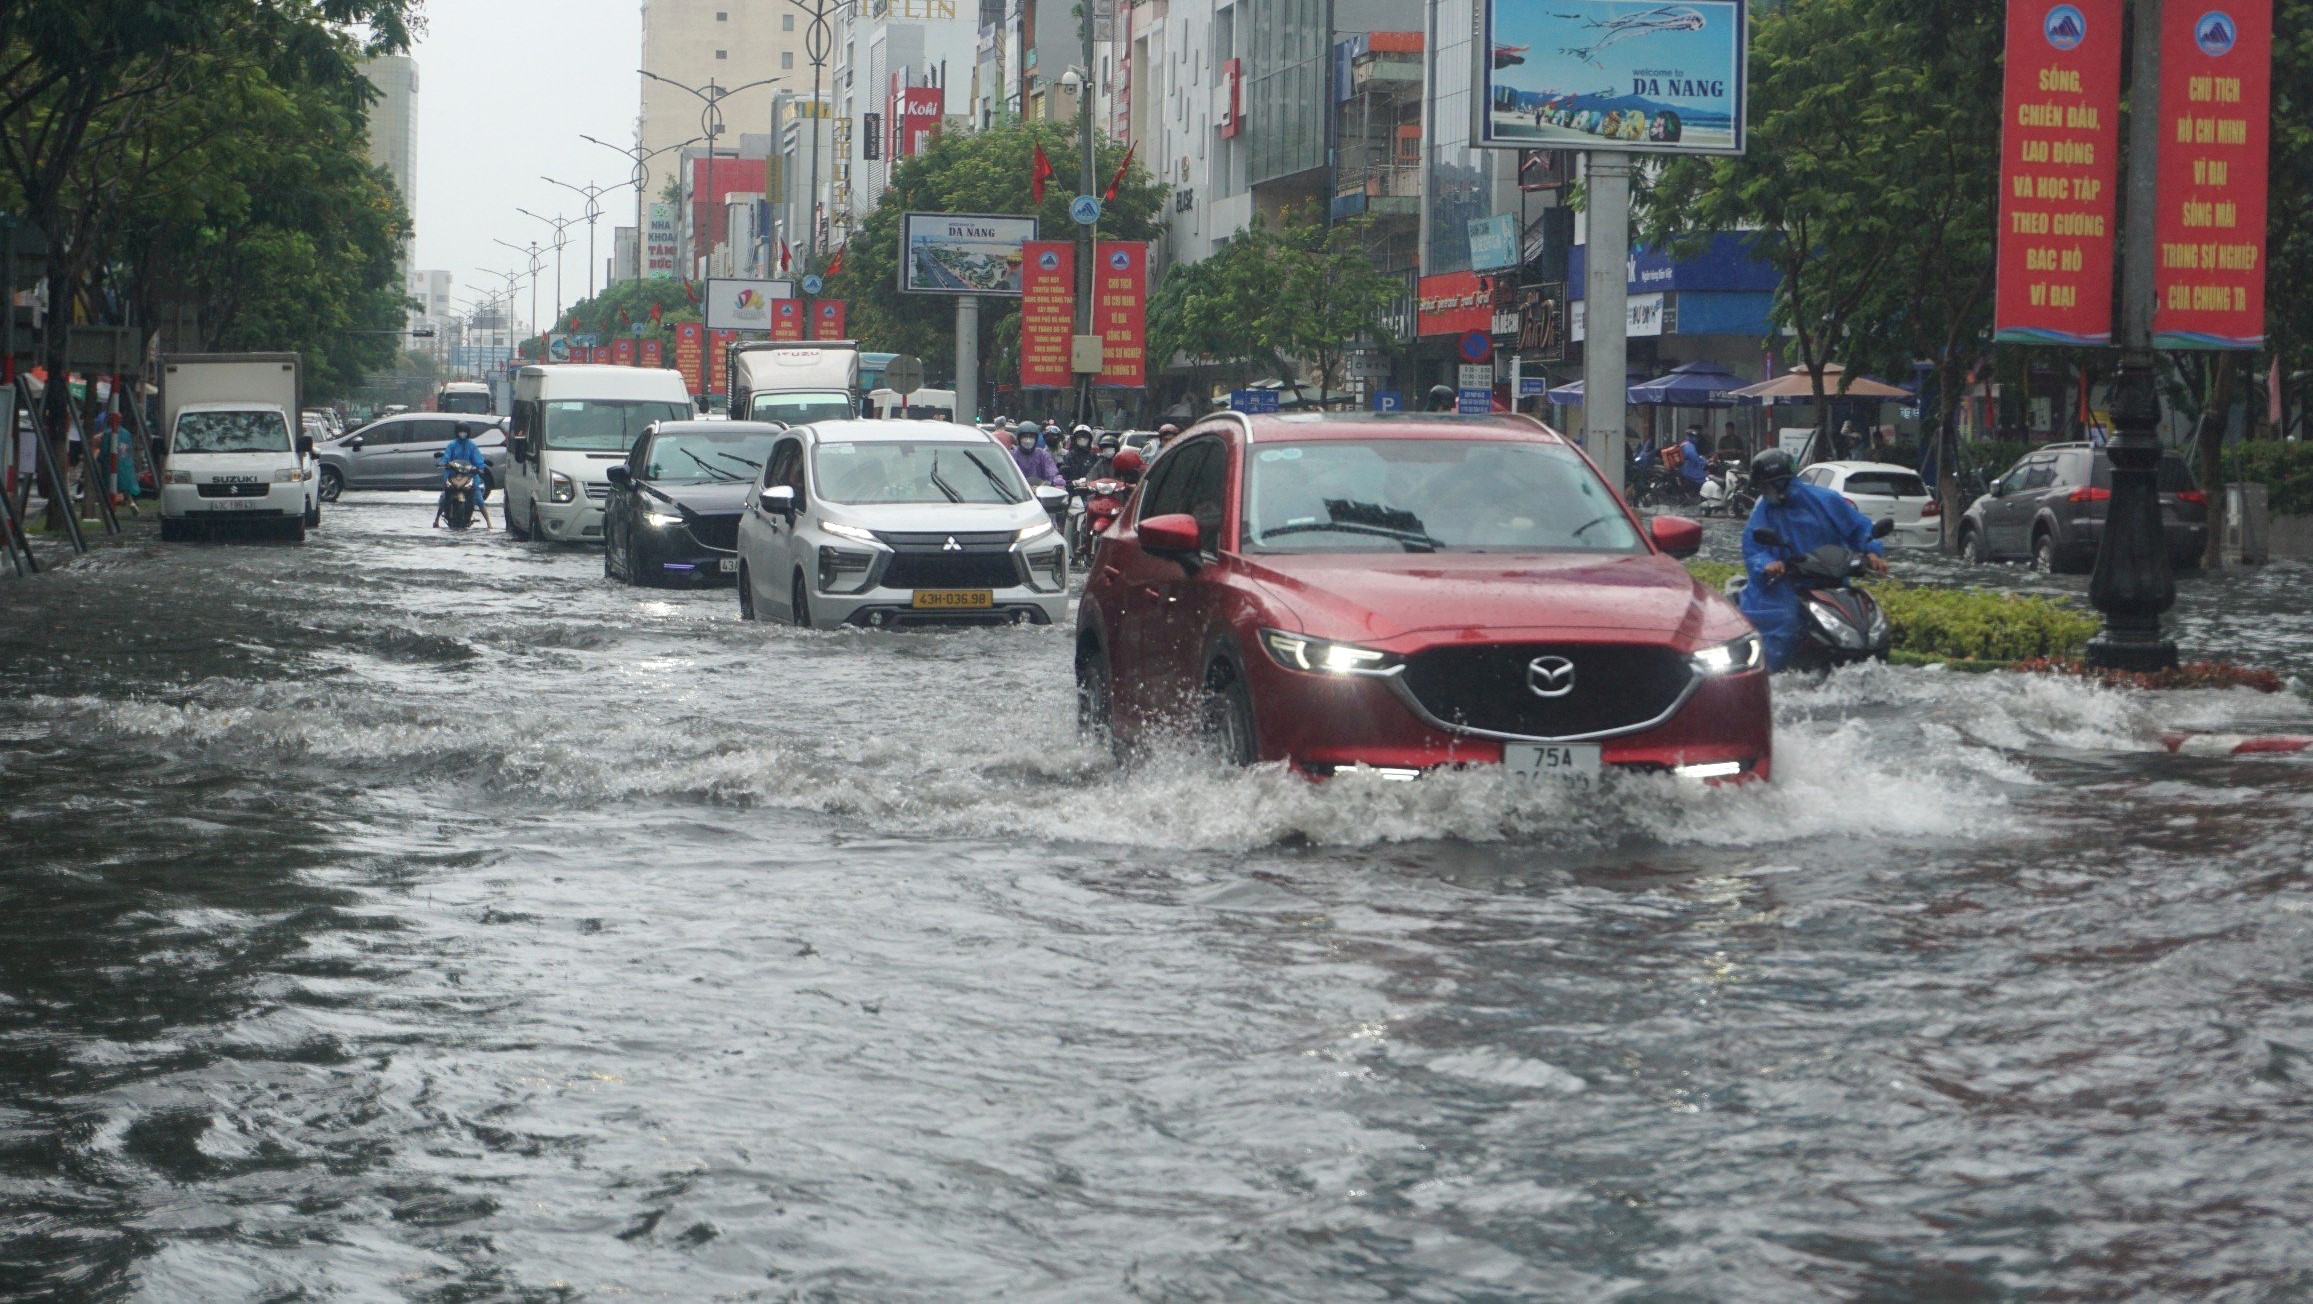 Mưa lớn gây ngập nhiều tuyến đường ở Đà Nẵng, giao thông hỗn loạn